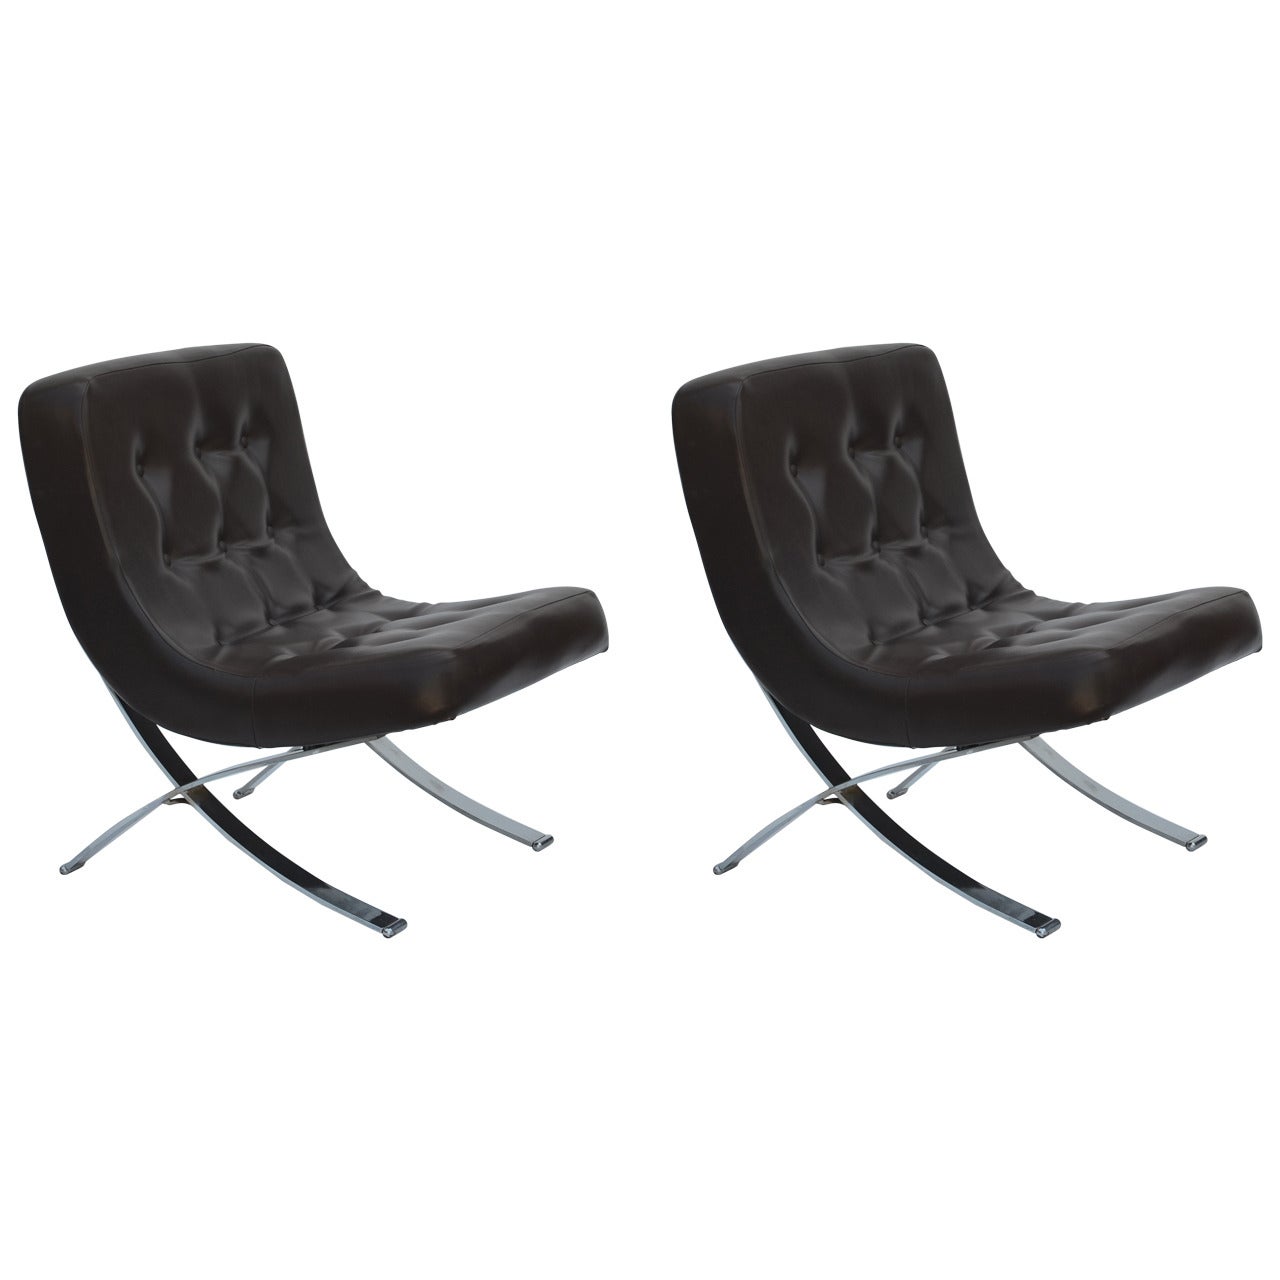 Pair of Chromed Italian 1970s Slipper Chairs